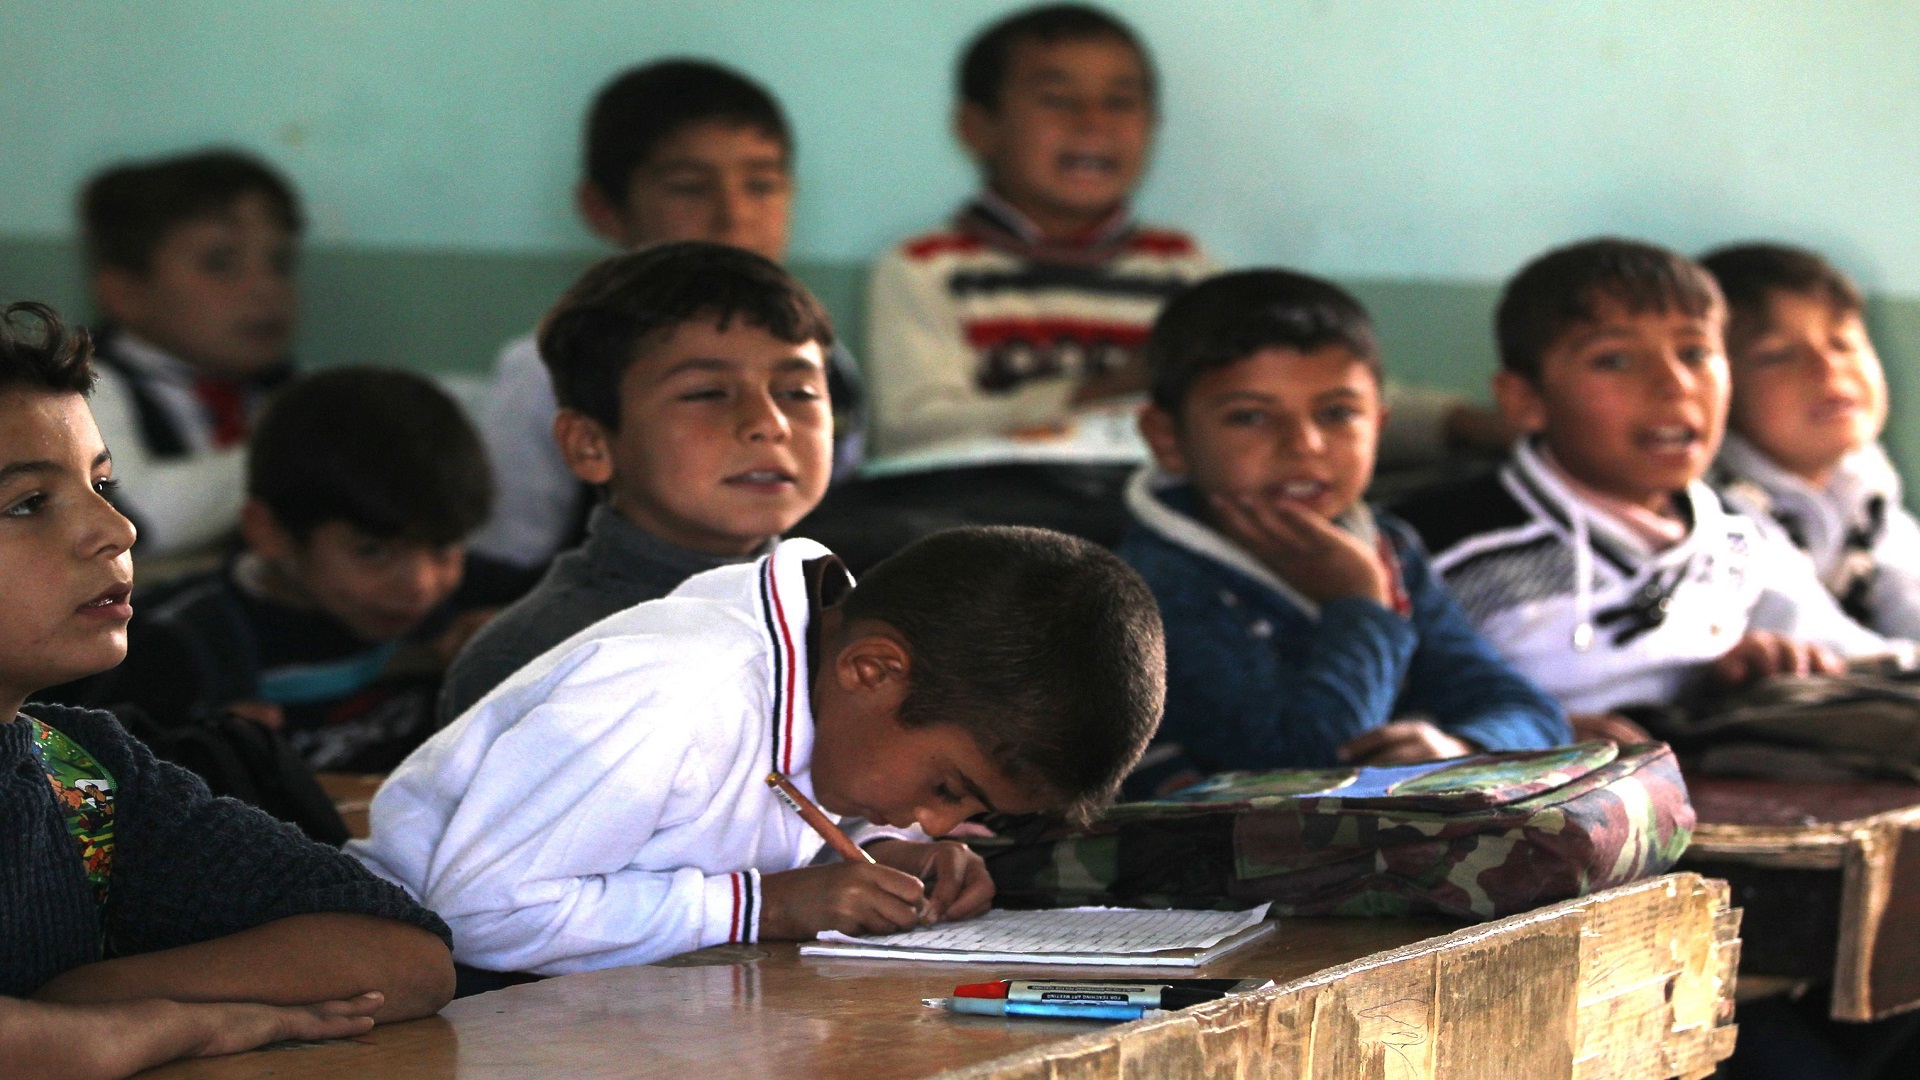 بدء تسجيل تلاميذ الأول الابتدائي للعام الدراسي الجديد في العراق 